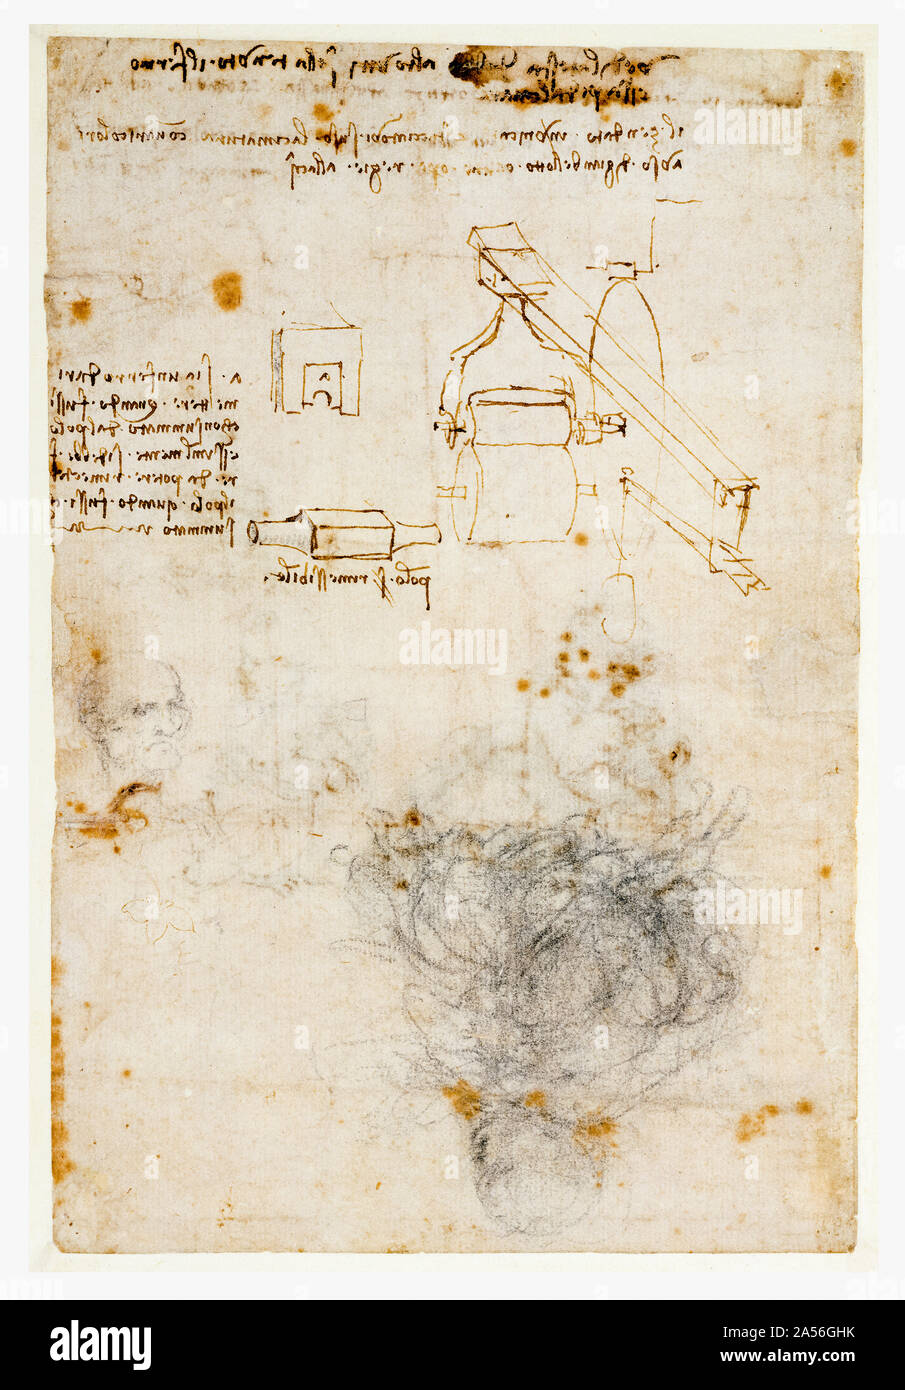 Leonardo Da Vinci, chef d'un vieil homme et d'études de machinerie, dessin, 1503-1506 Banque D'Images